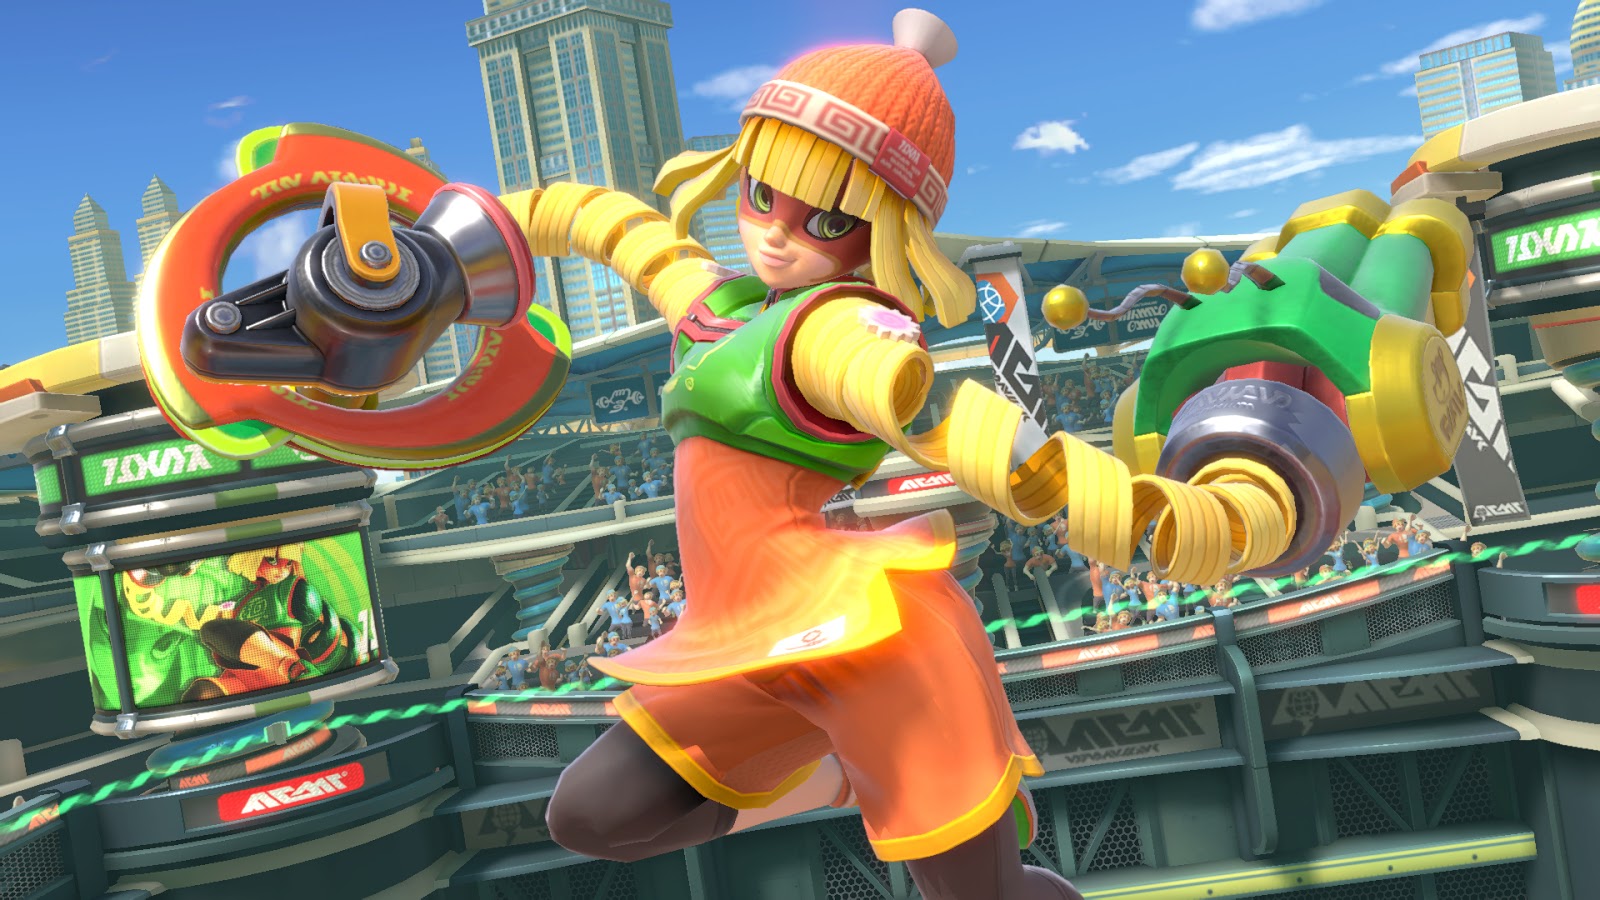 Super Smash Bros. Ultimate (Switch) é eleito o jogo do ano pela Famitsu -  Nintendo Blast